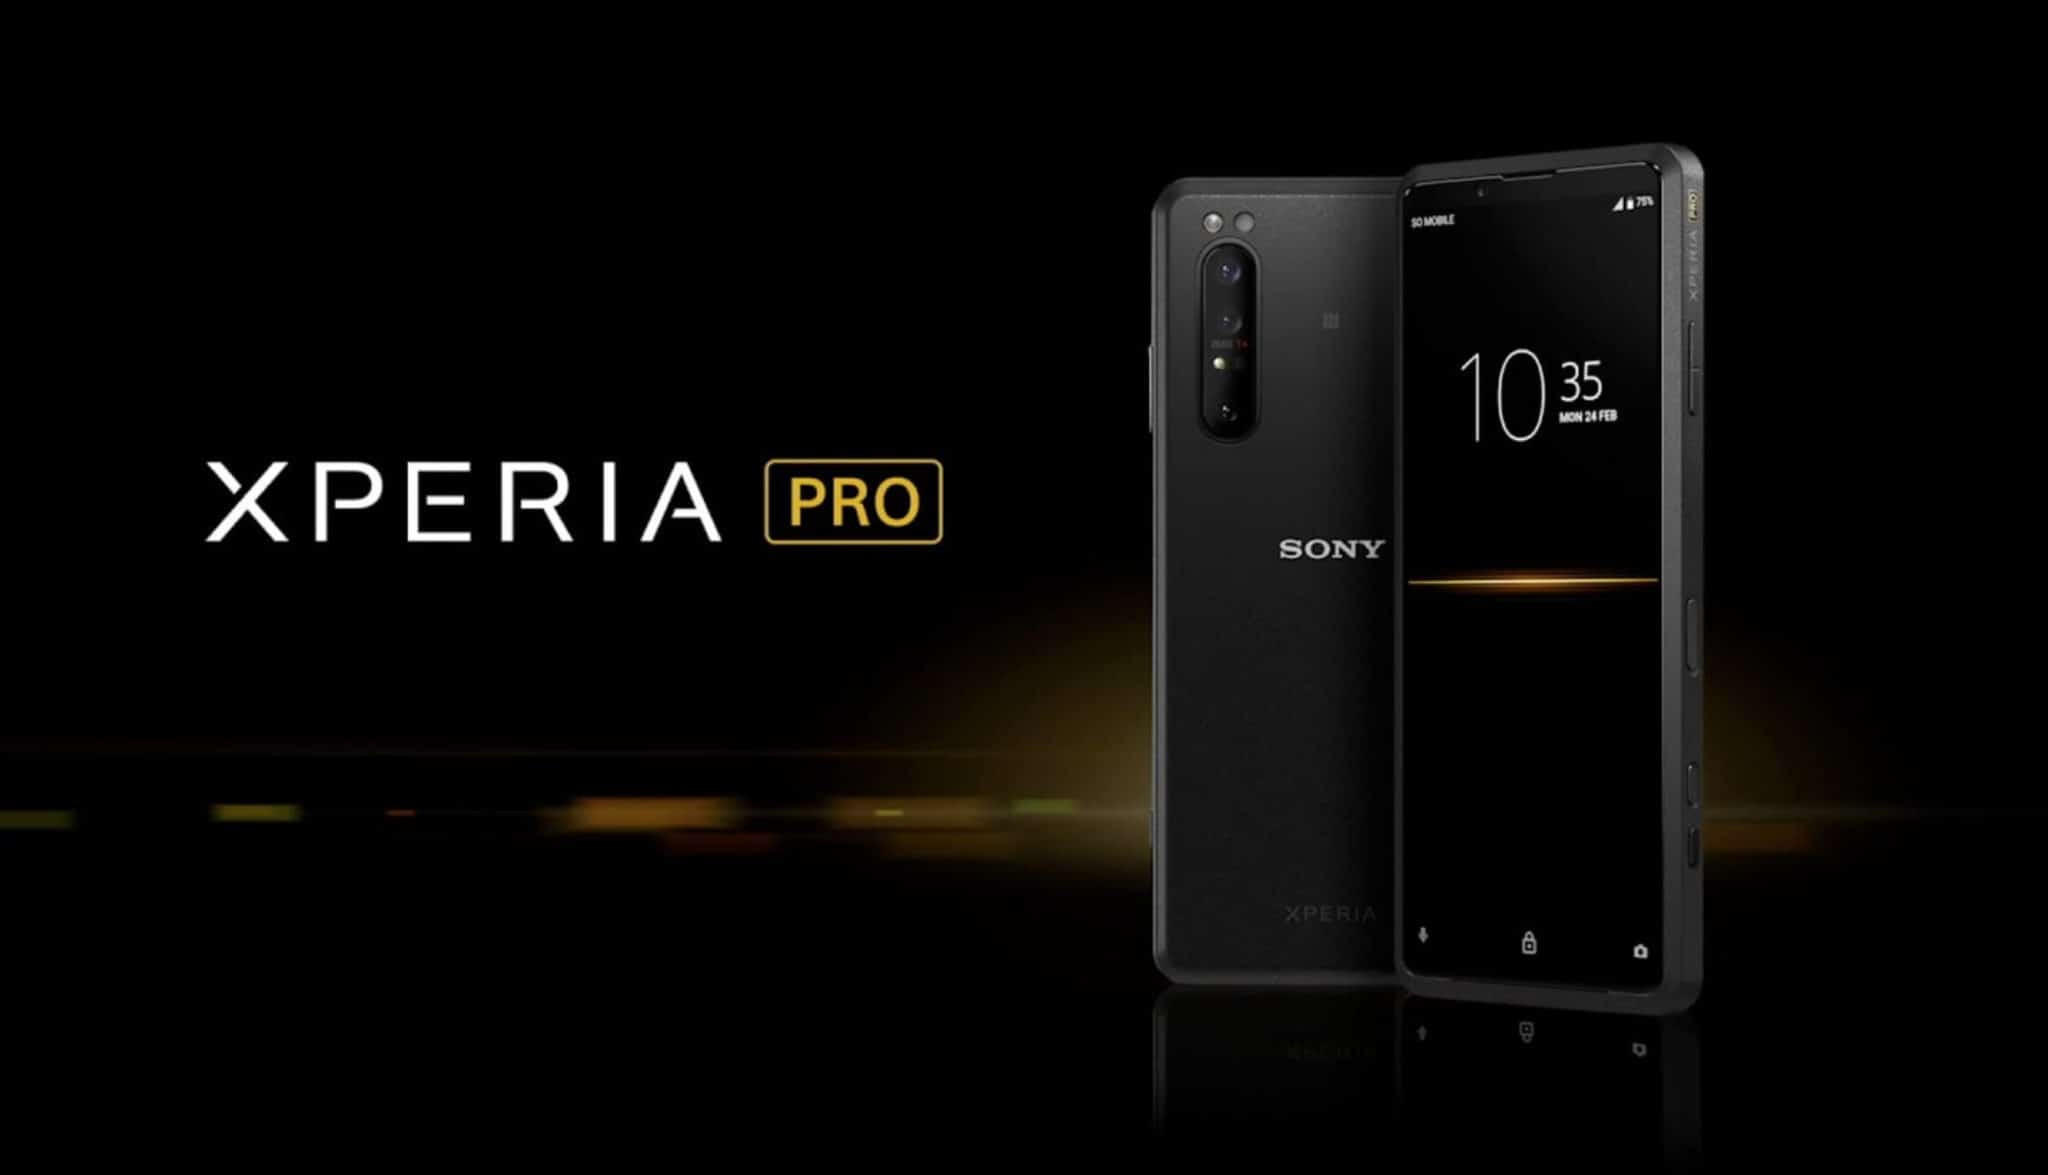 Sony Xperia Pro Smartphone